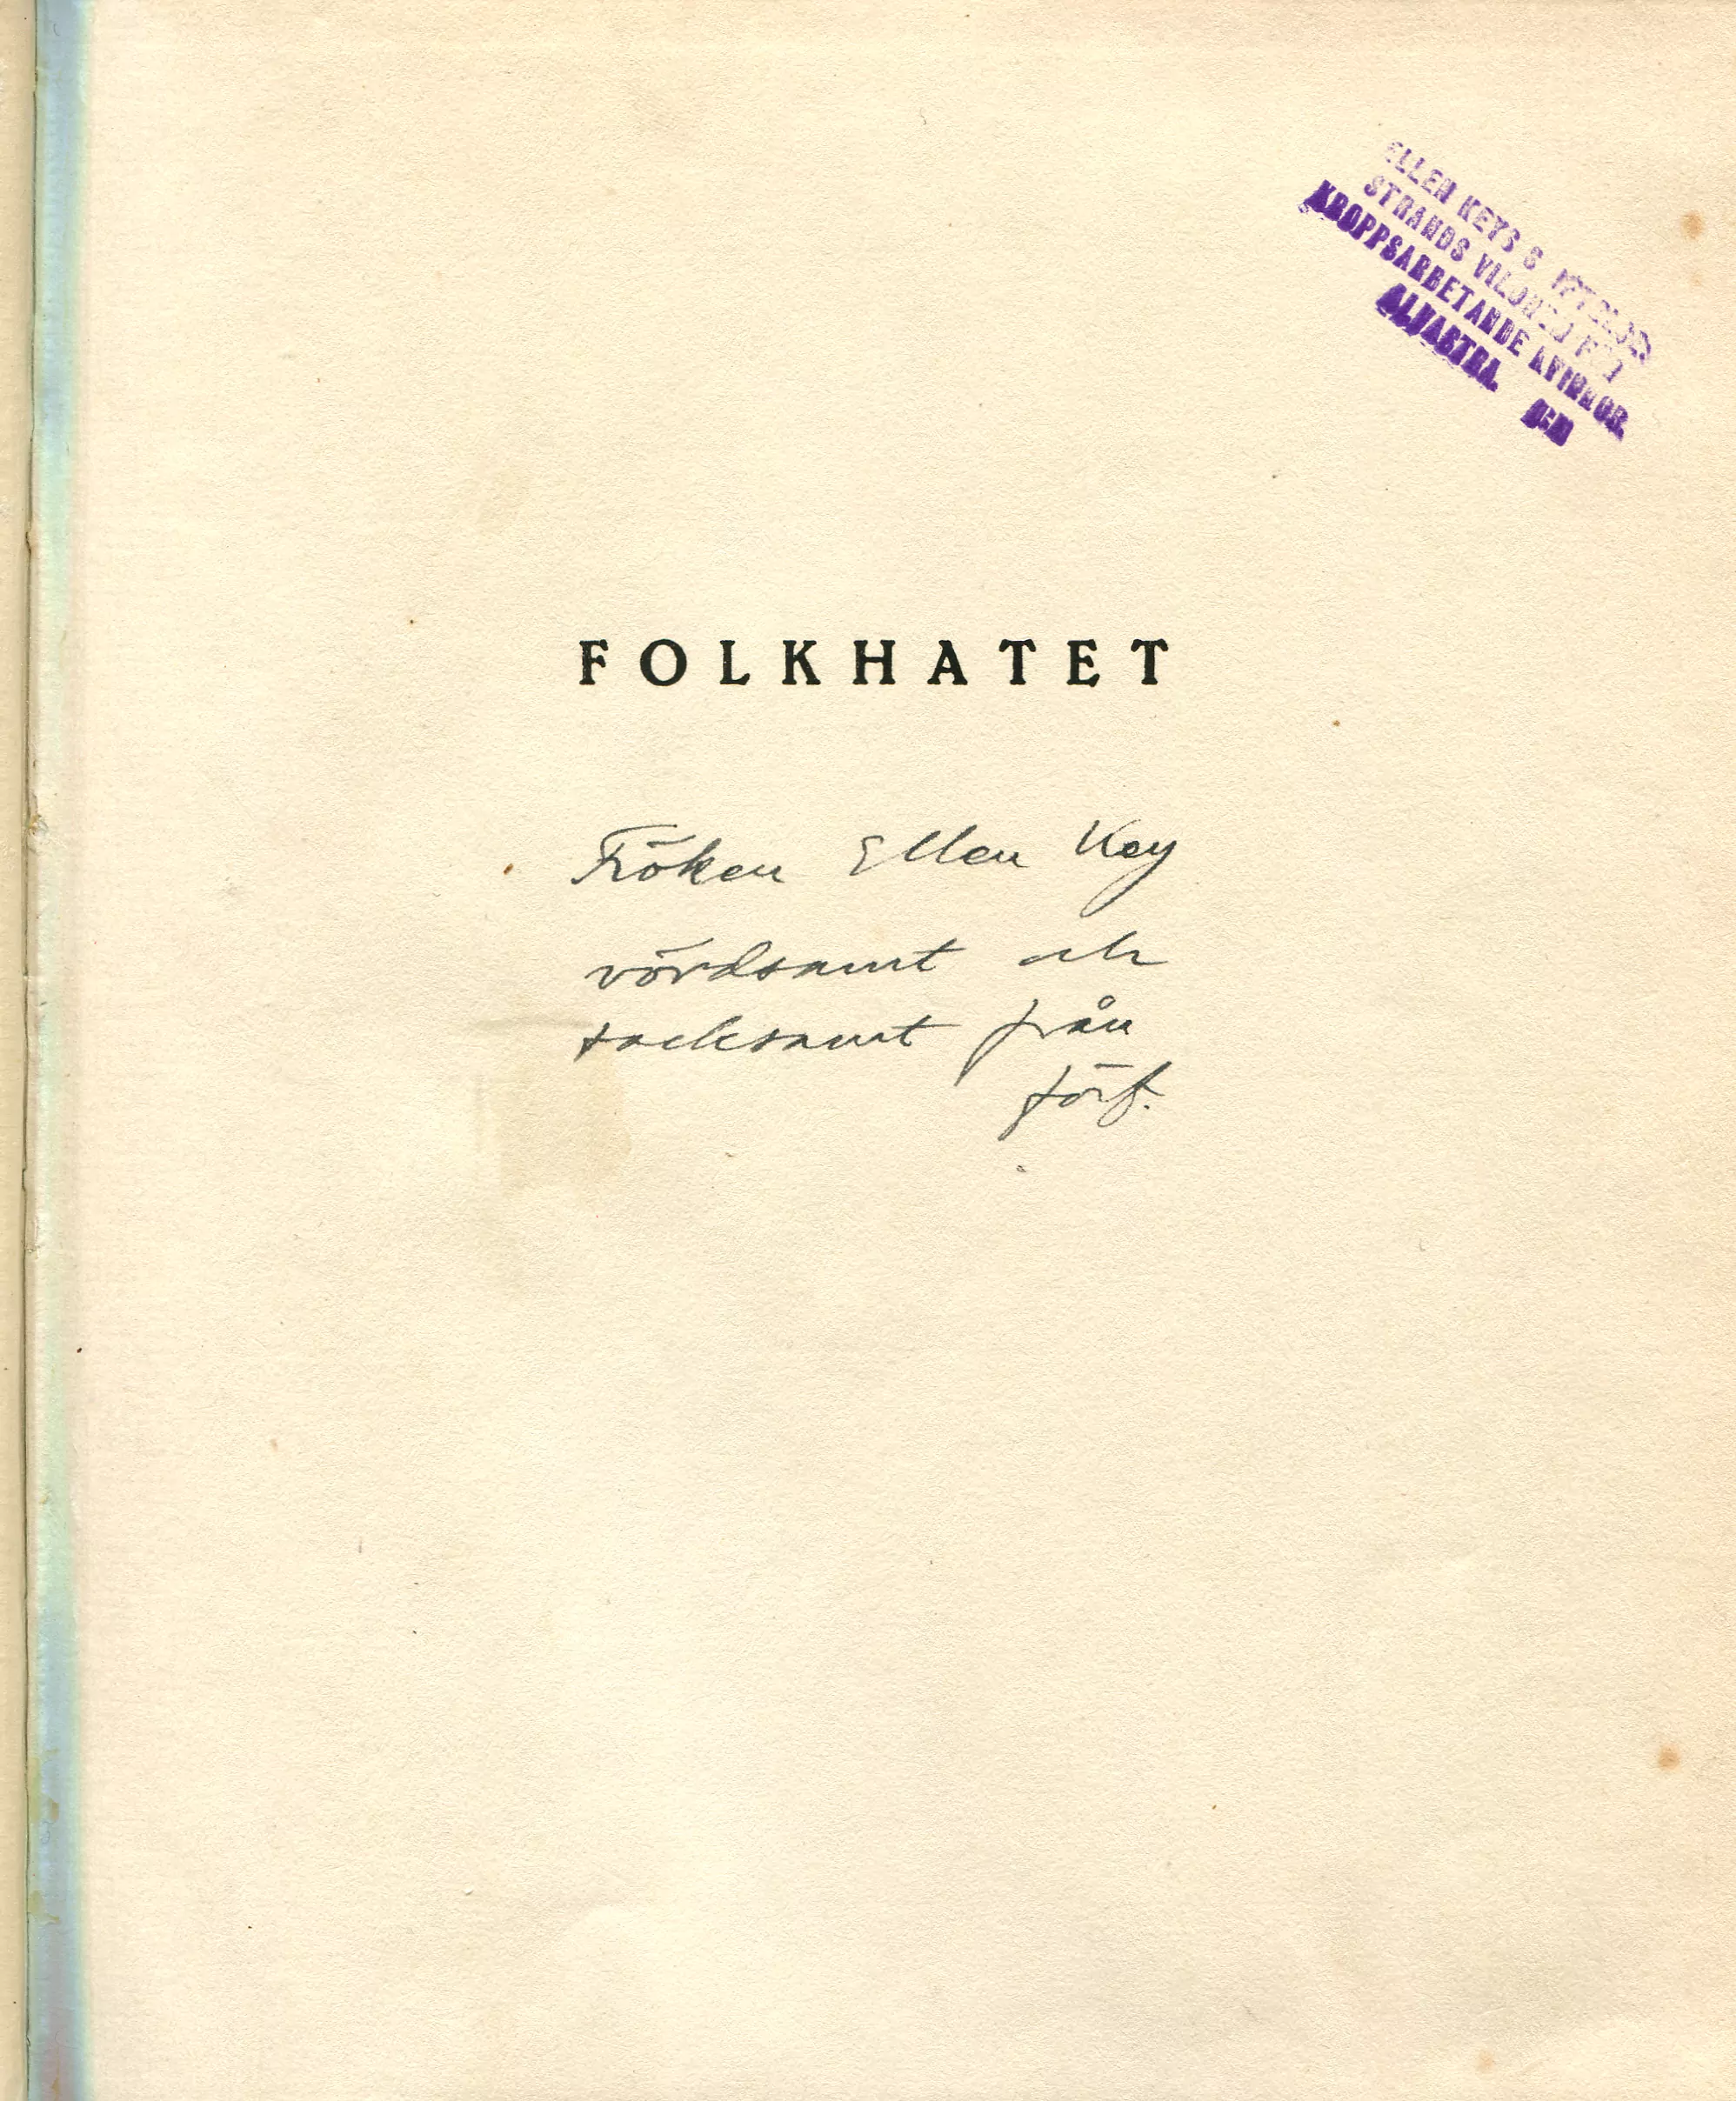 Folkhatet , Stockholm 1918